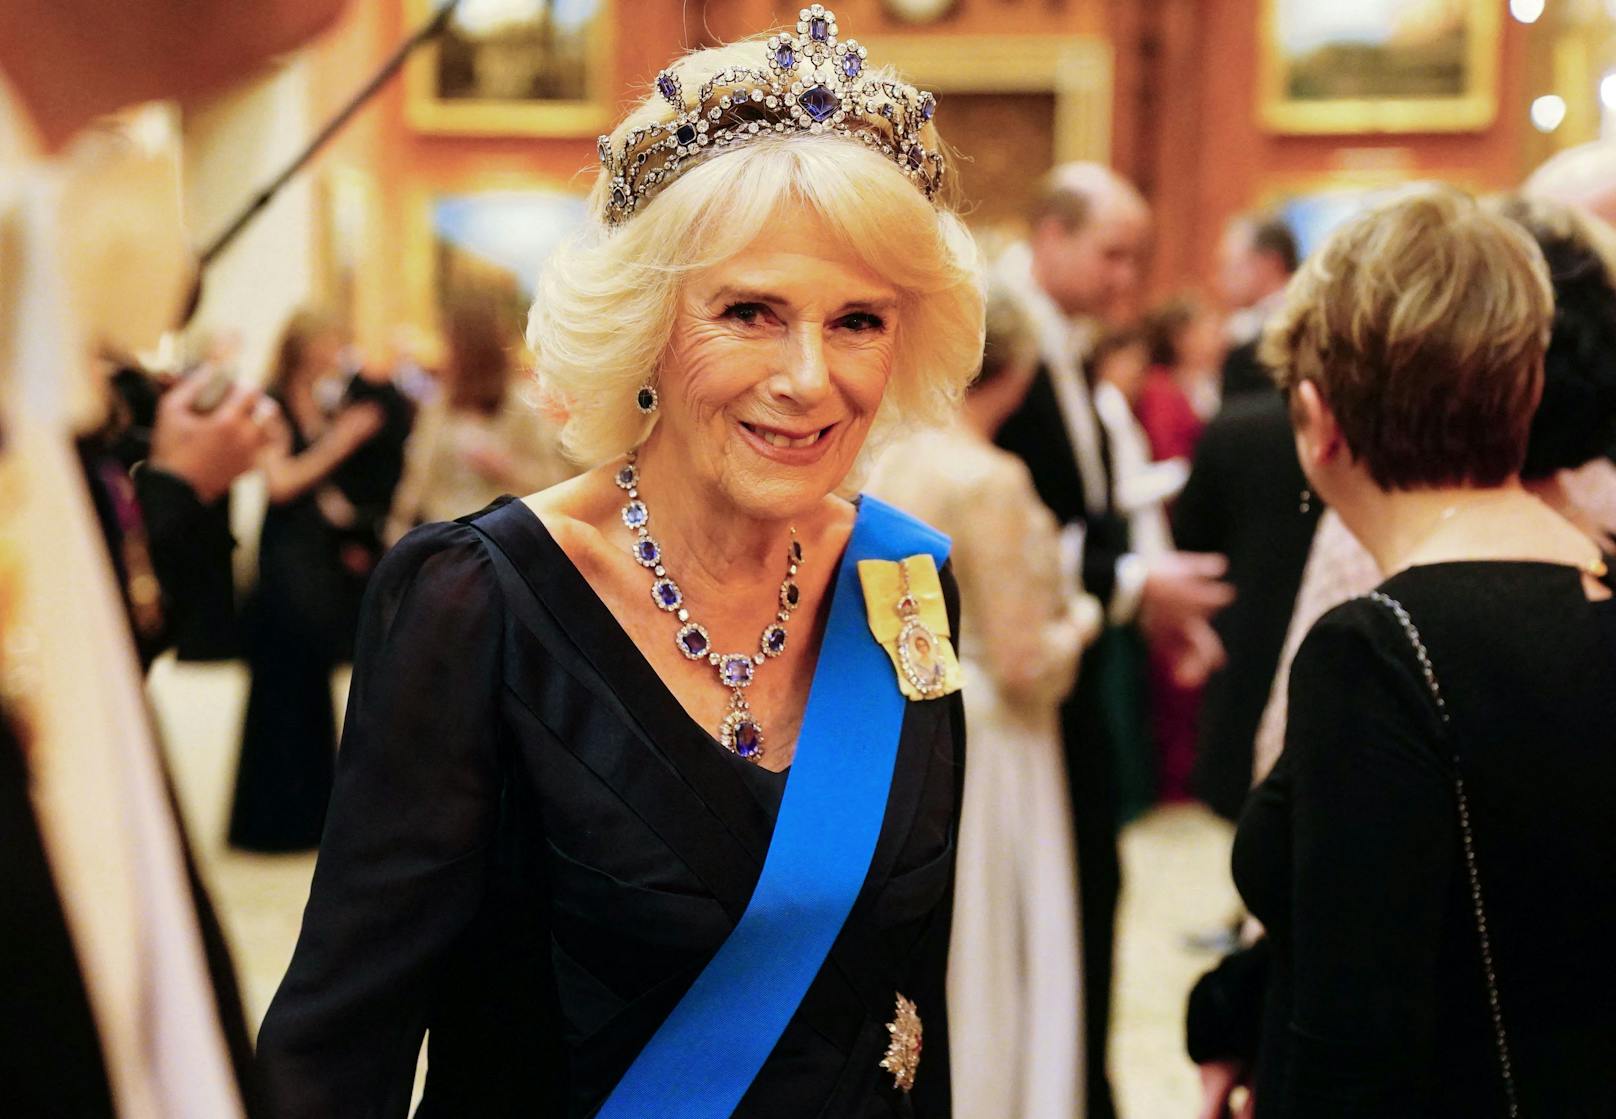 Königin Camilla: Palast bezeichnet sie als "Queen"